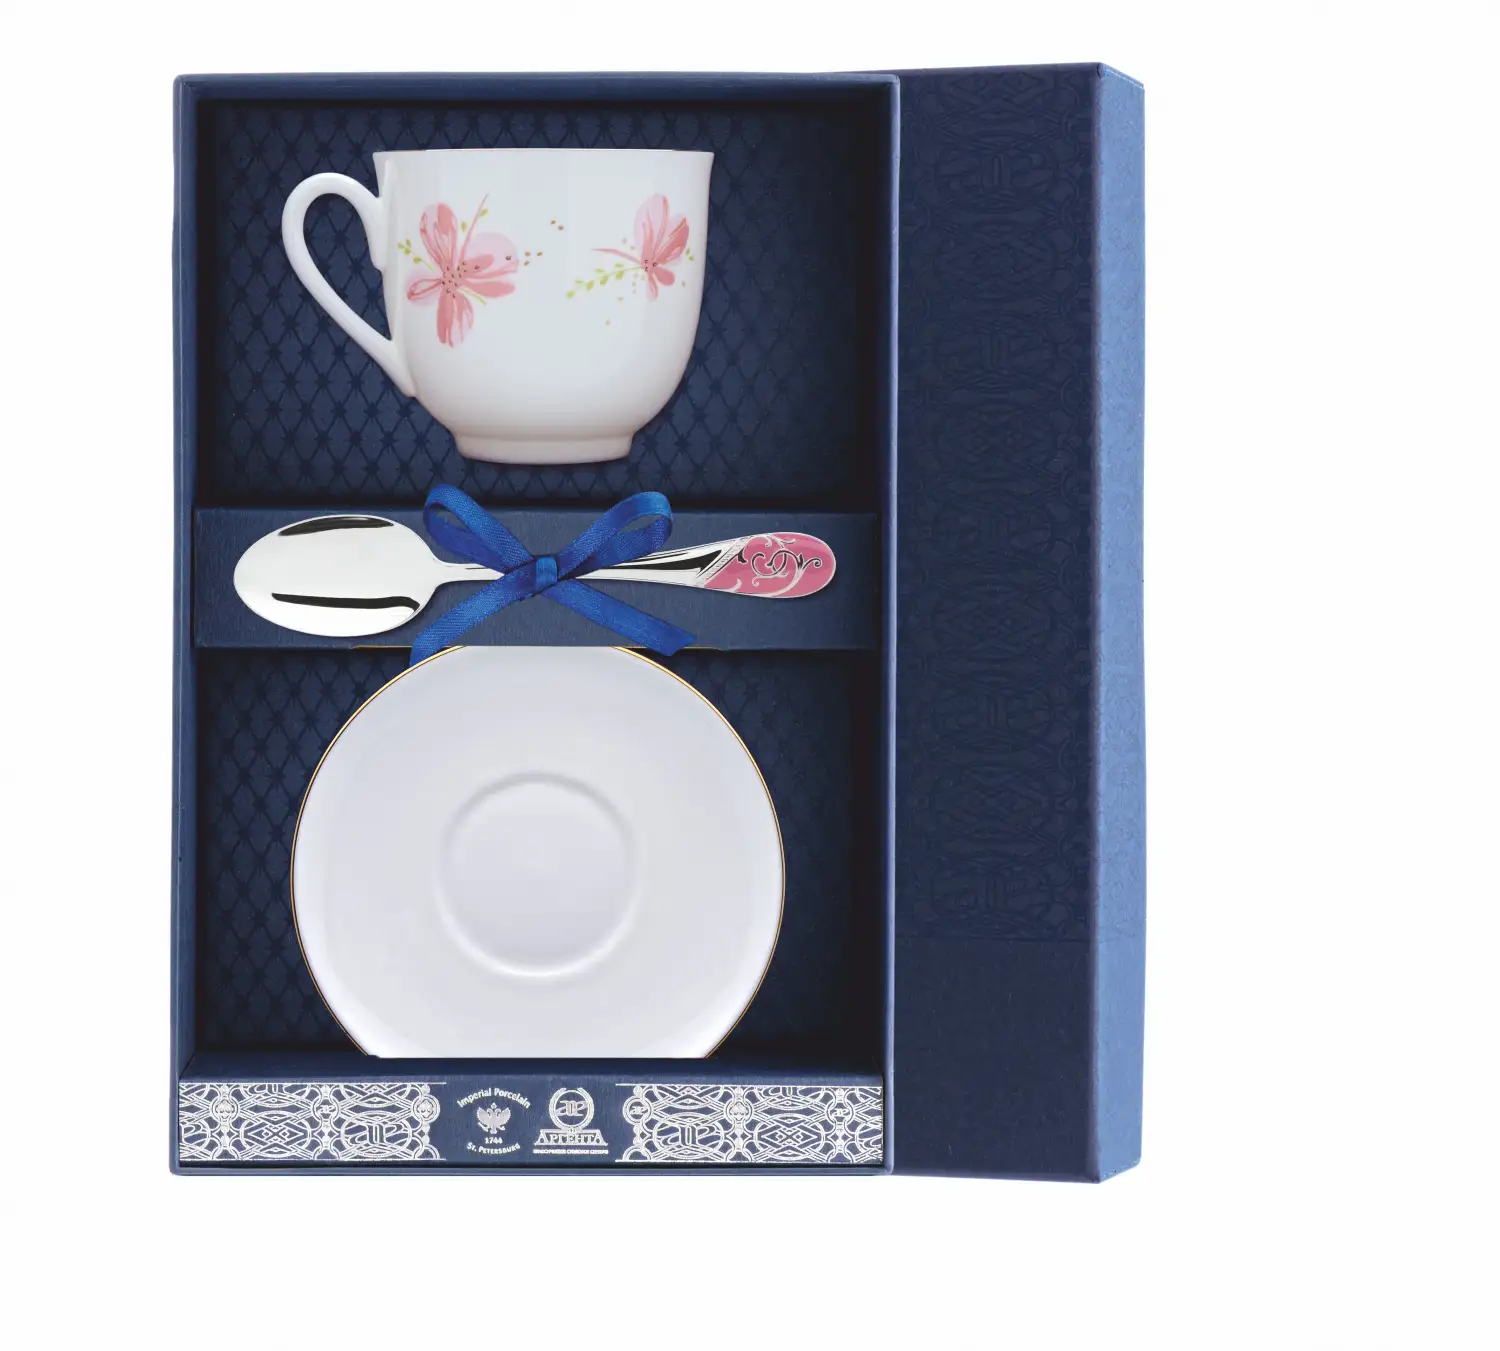 цена Набор чайный Ландыш - Розовые цветы: ложка, рамка для фото, чашка (Серебро 925)